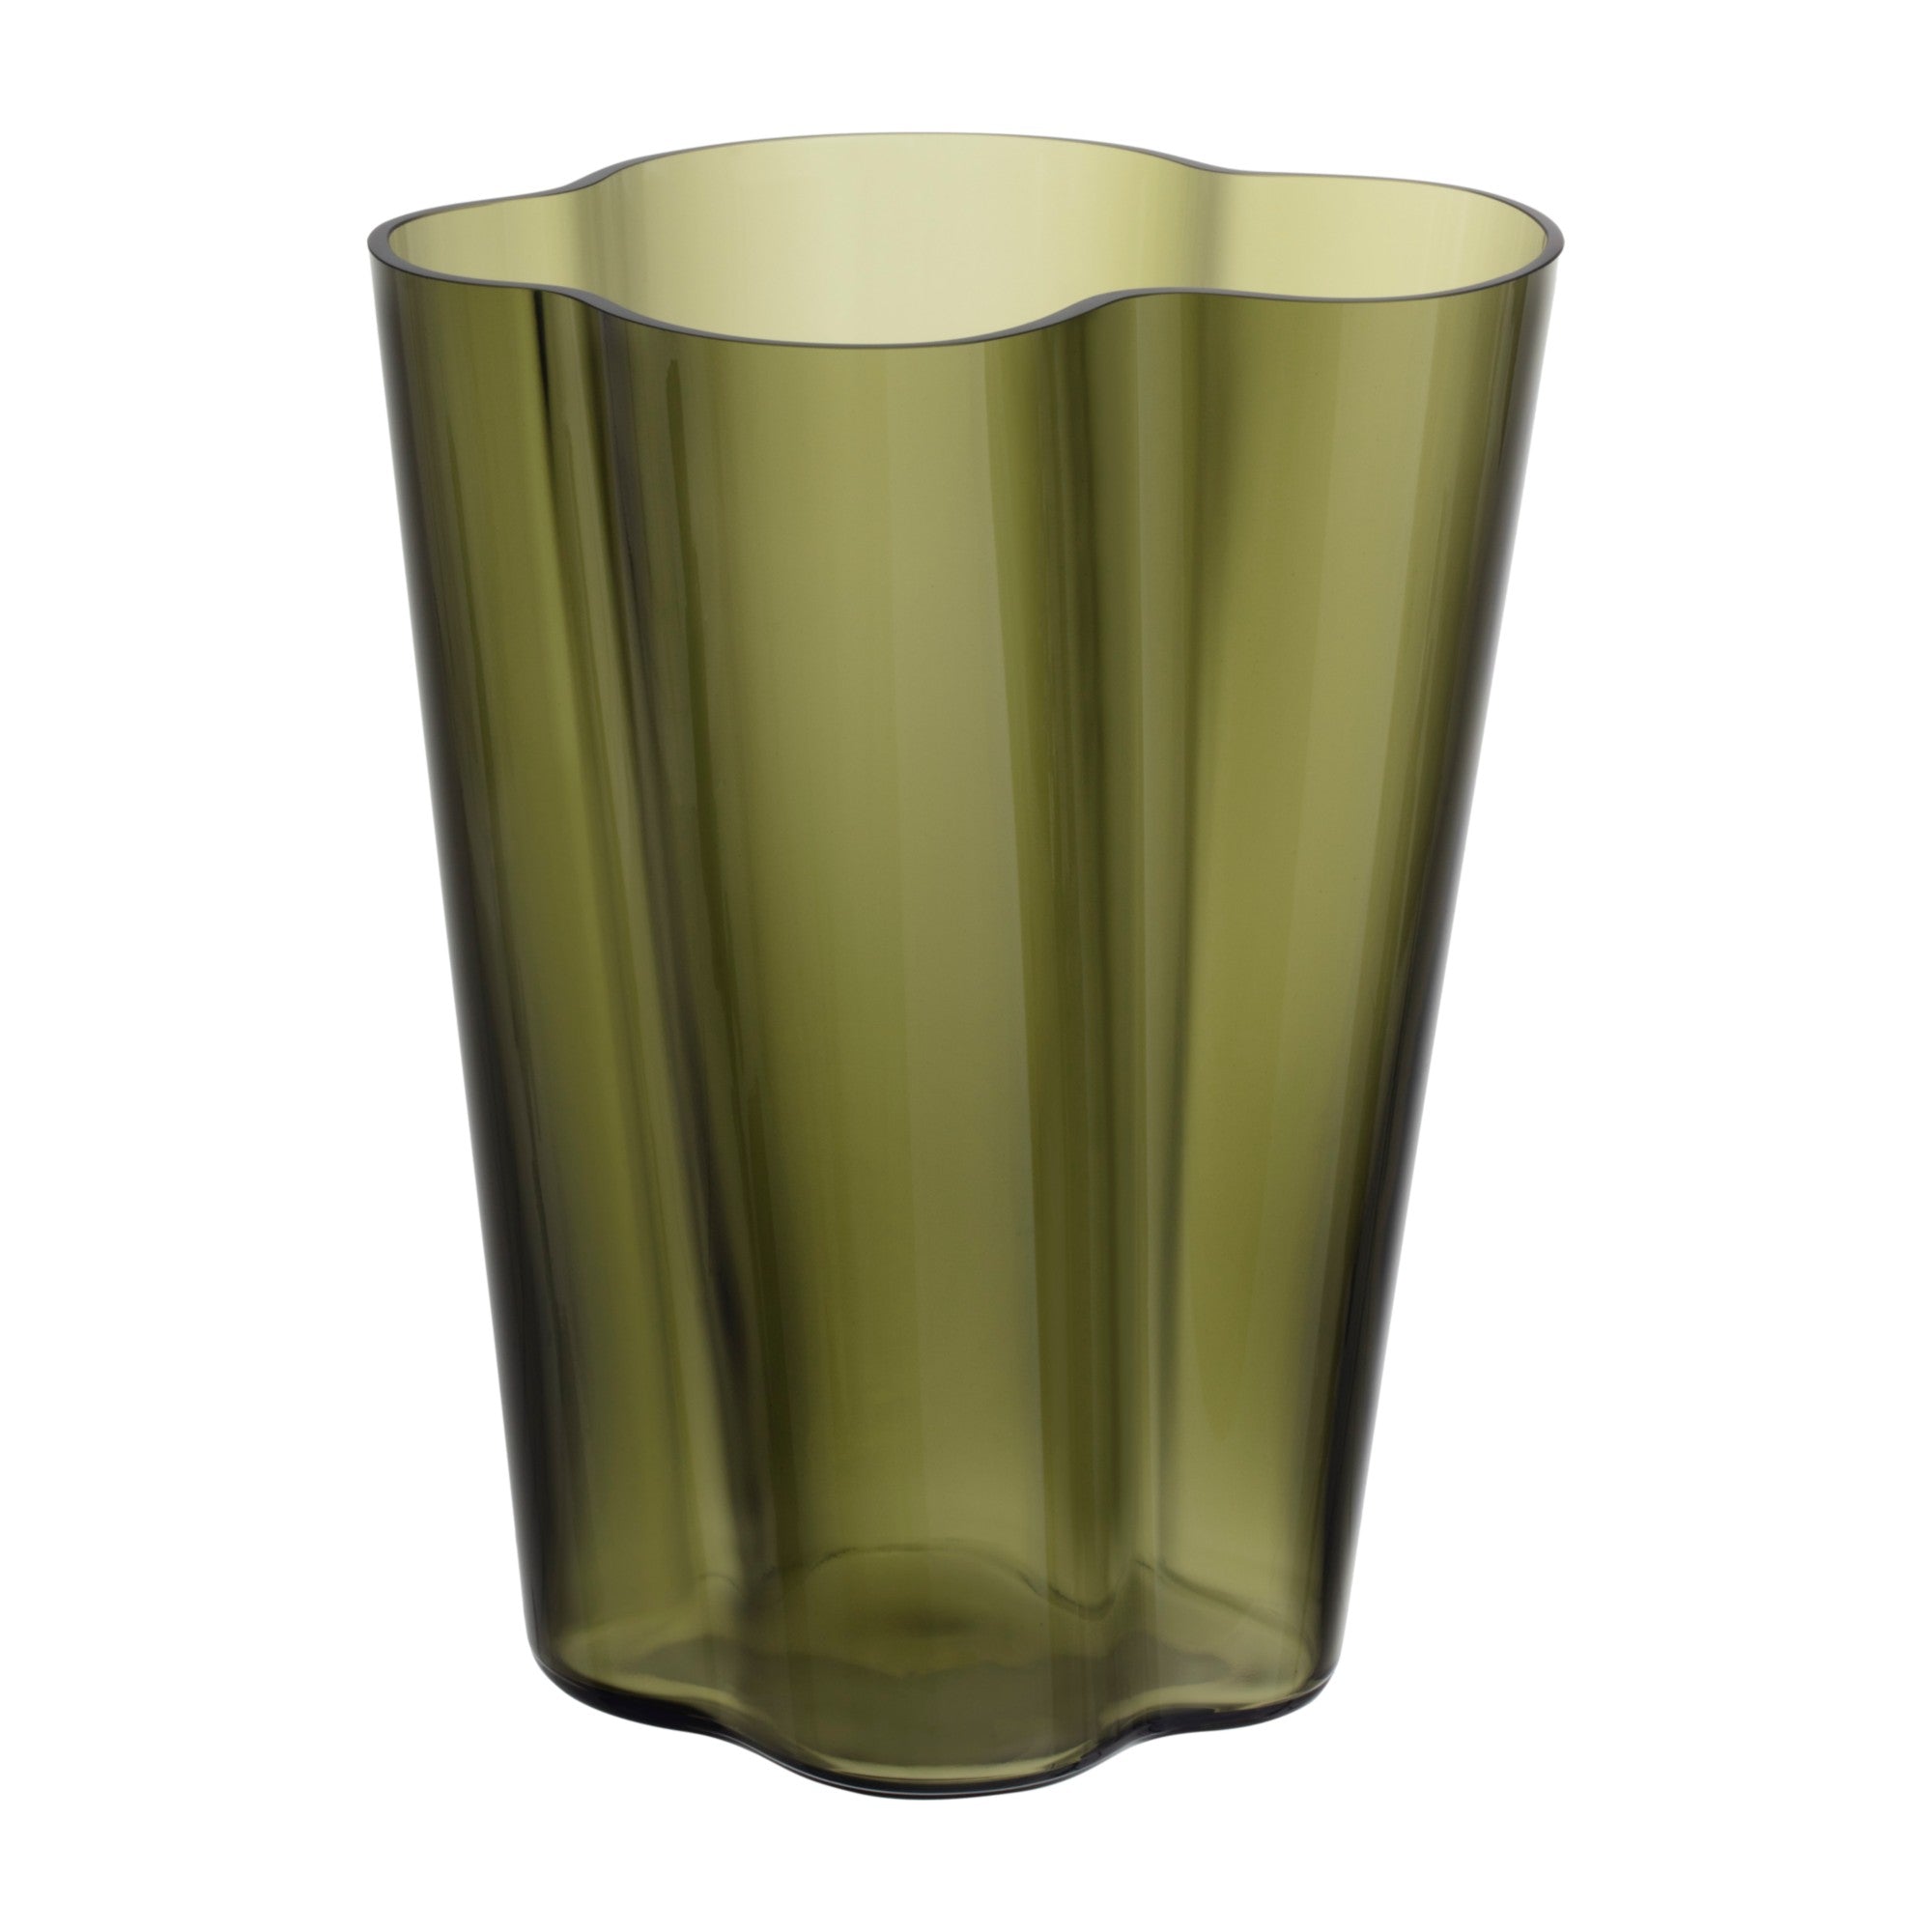 Alvar Aalto Collection vase 270 mm / 10.5" 9   ( 4 colours )